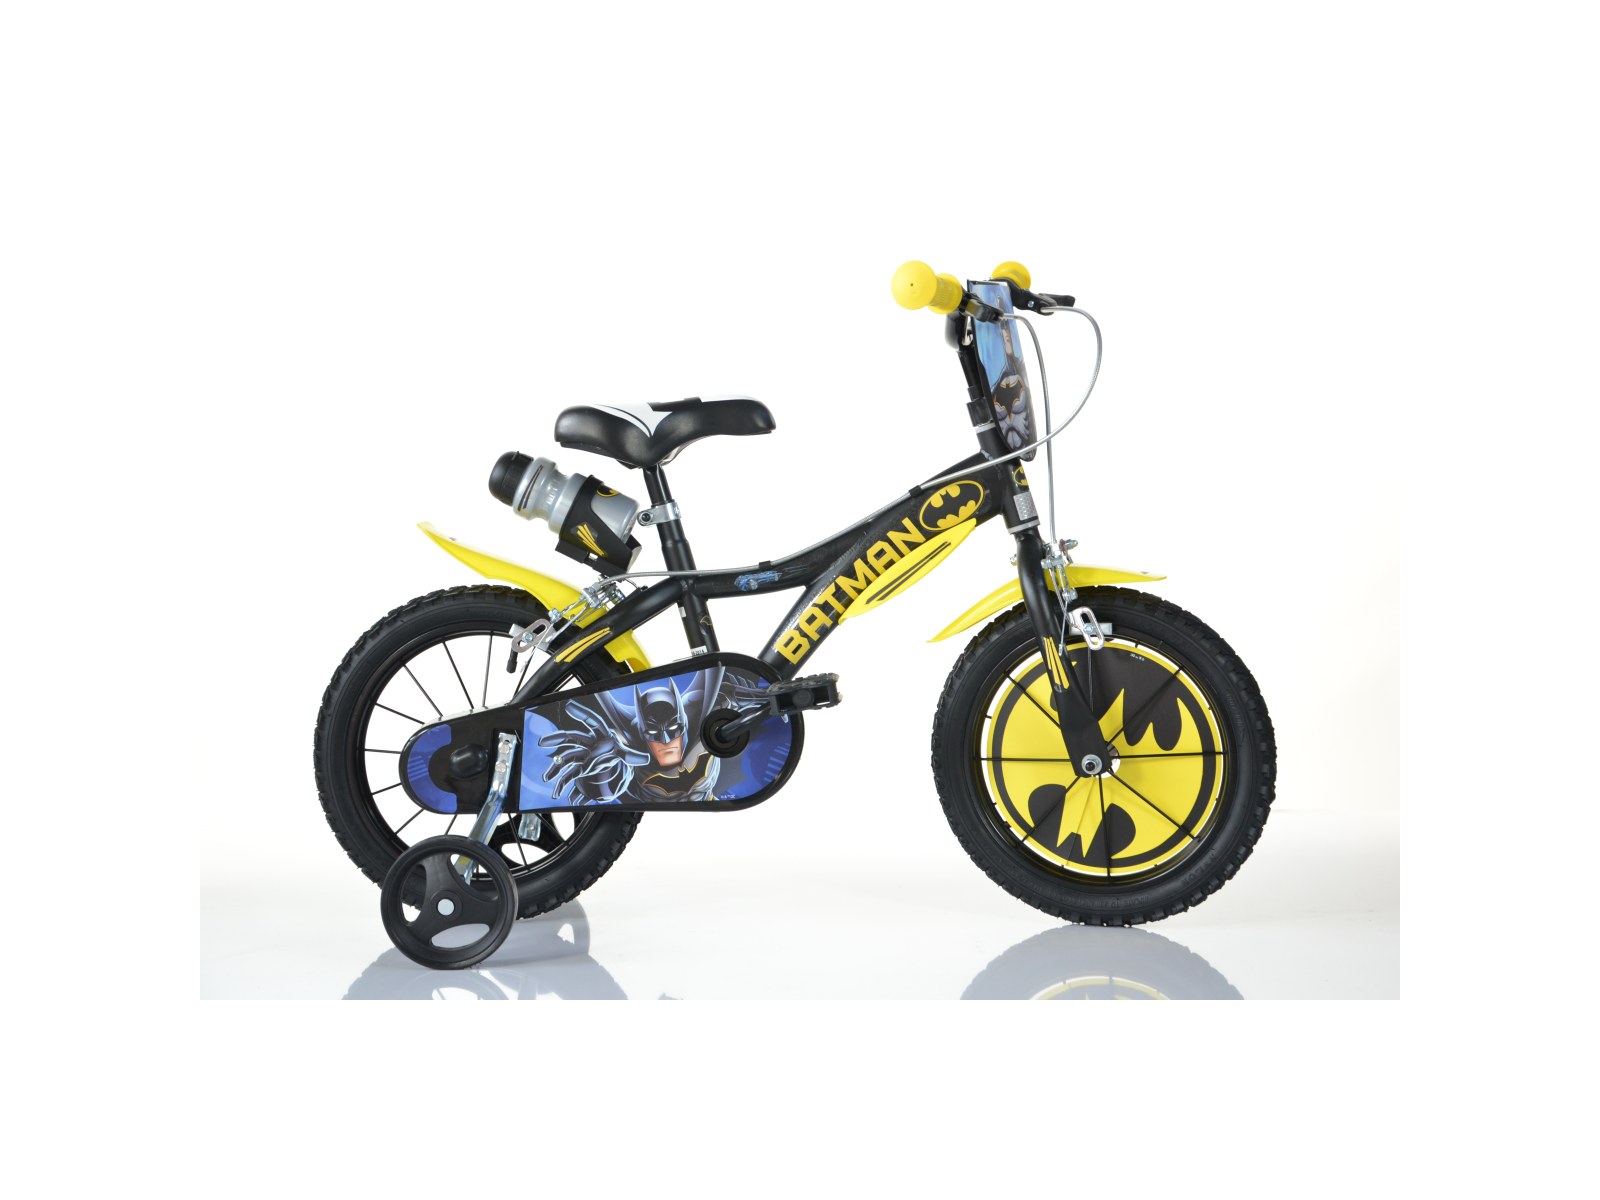 Bicicletta da bambino batman ruota 16 pollici con rotelle, freno e scudo anteriore - adatta a 8 -12 anni - ideale per imparare a pedalare in autonomia con massima sicurezza - BATMAN, DC COMICS